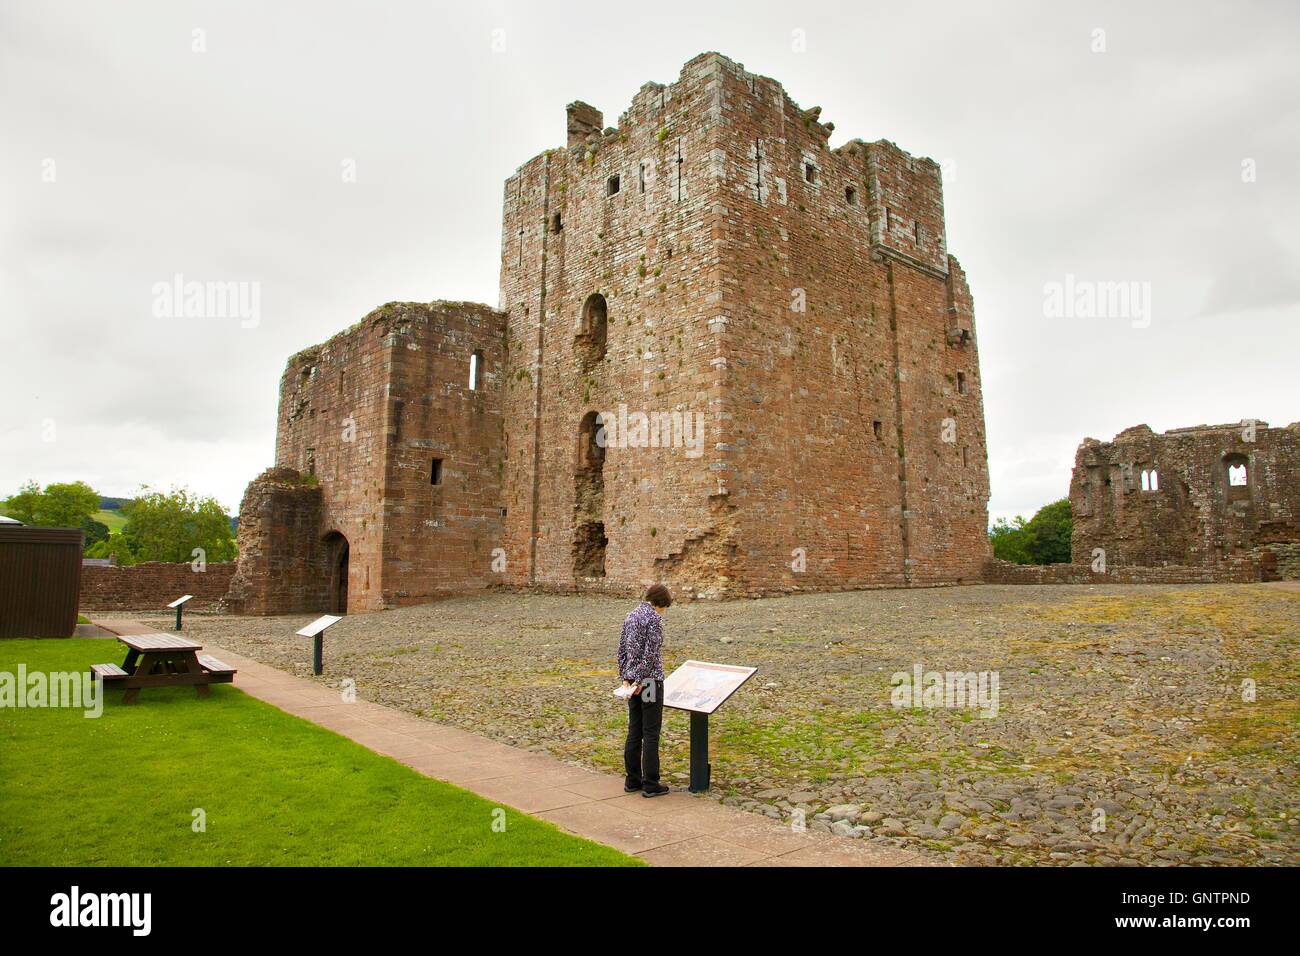 Brougham Castle halten. Frau touristische Zeichen betrachten. Penrith, Cumbria, England, Vereinigtes Königreich, Europa. Stockfoto